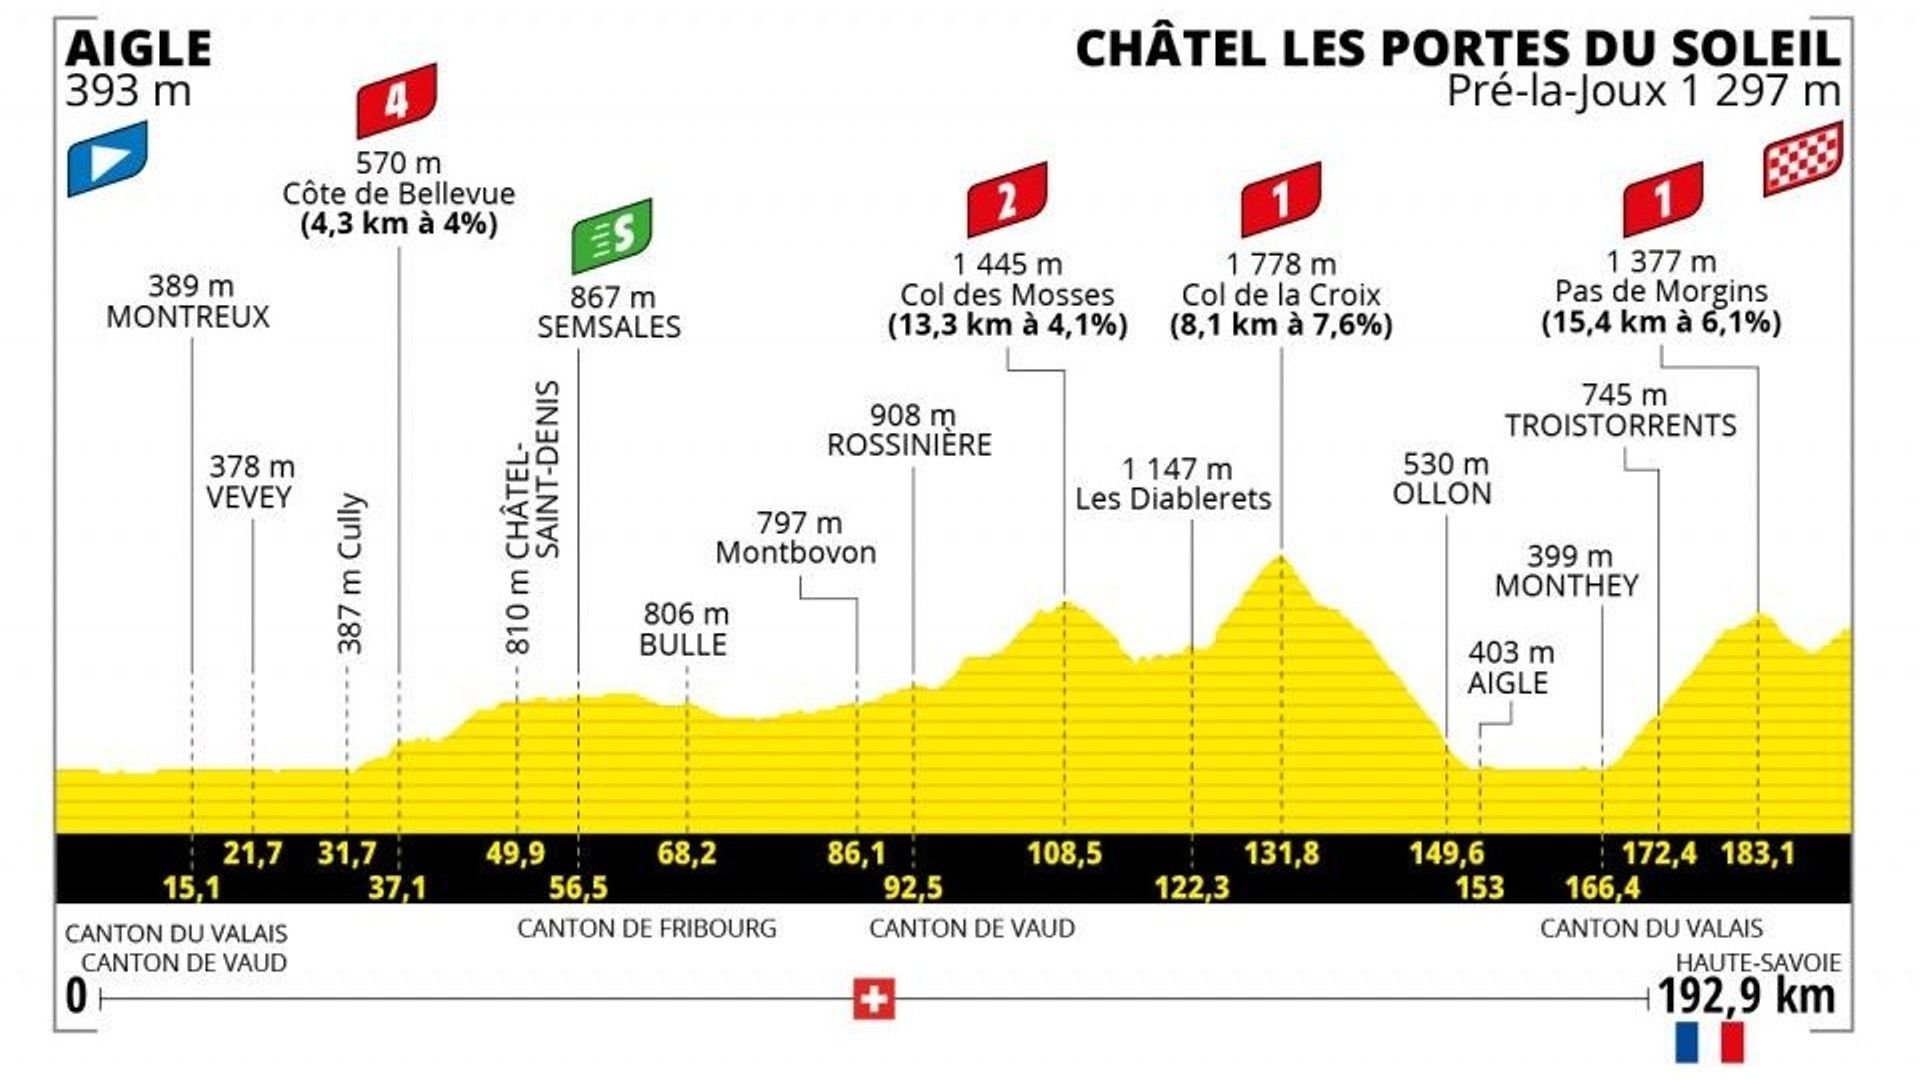 Profil de la 9ème étape du Tour de France 2022. Une étape longue de 192.9 km reliant Aigle à Châtel les portes du soleil. 